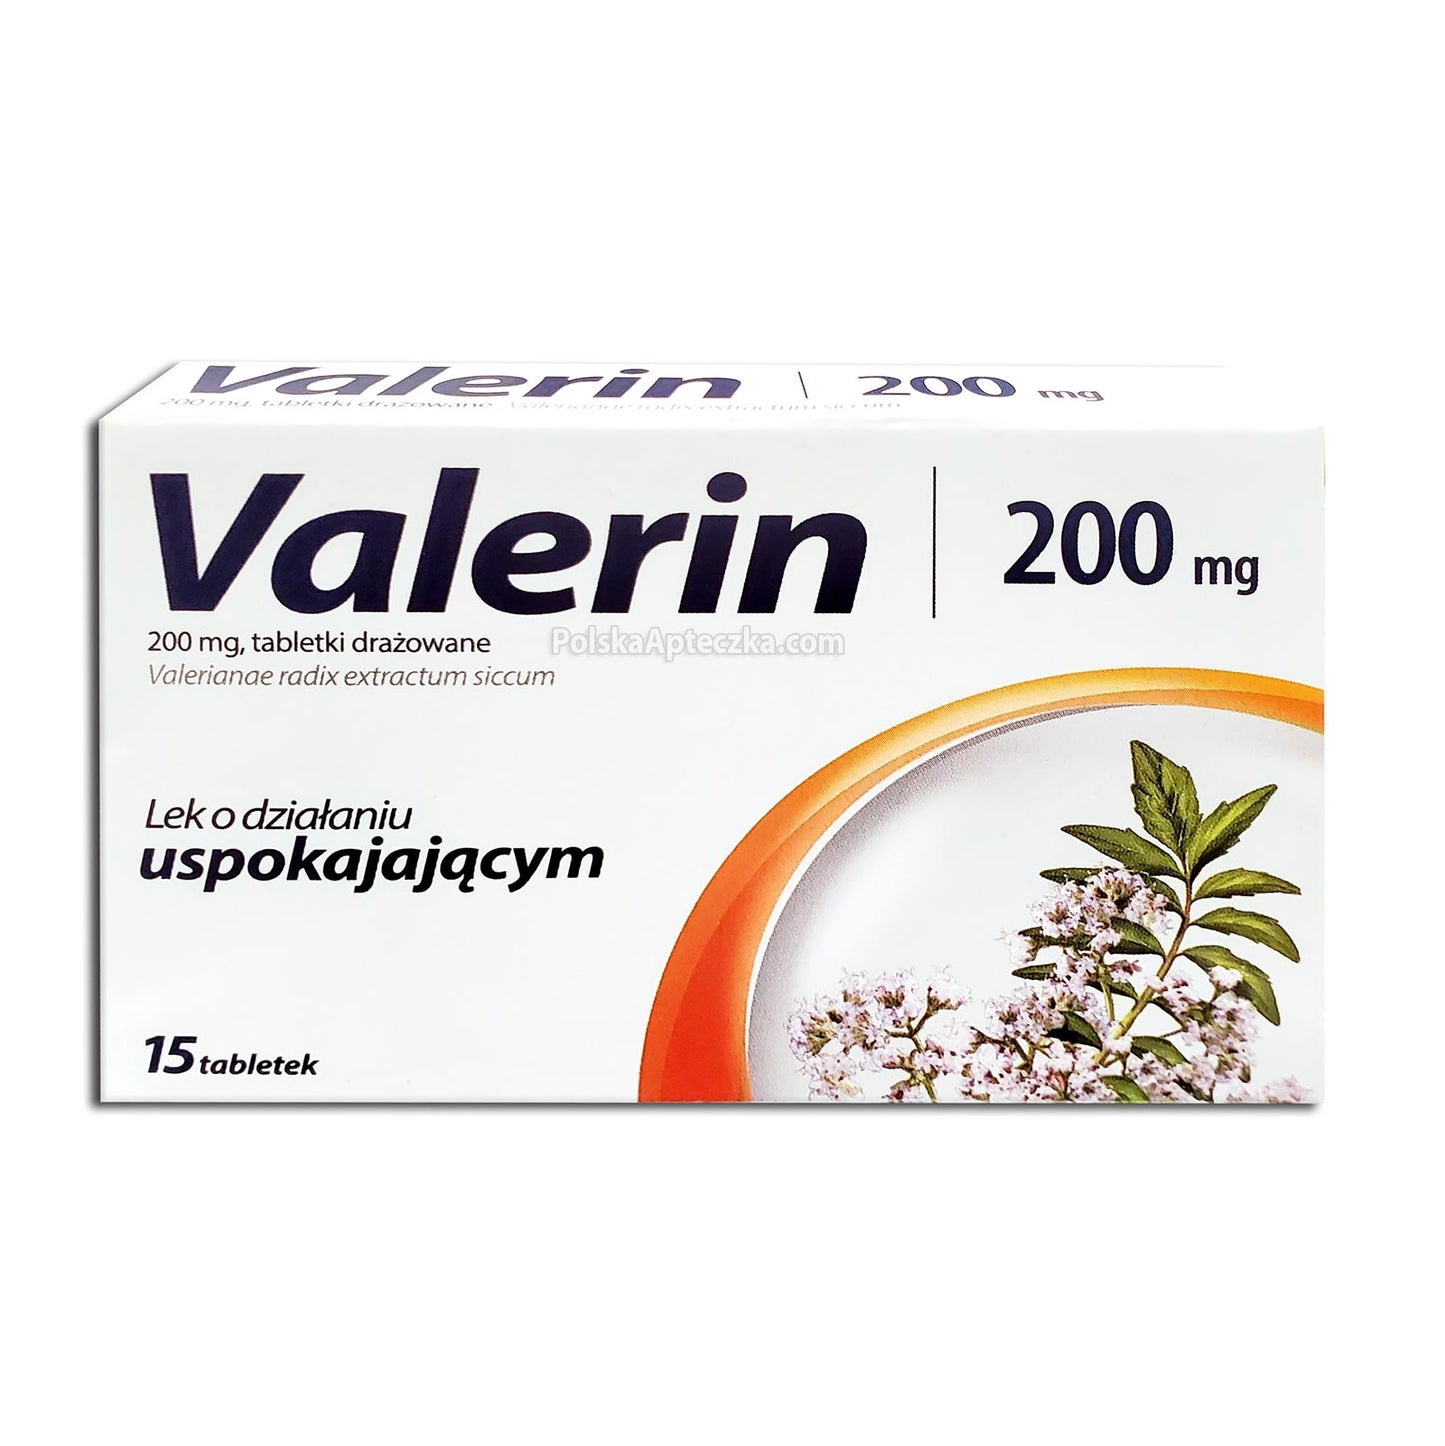 Valerin 200mg, 15 tablets